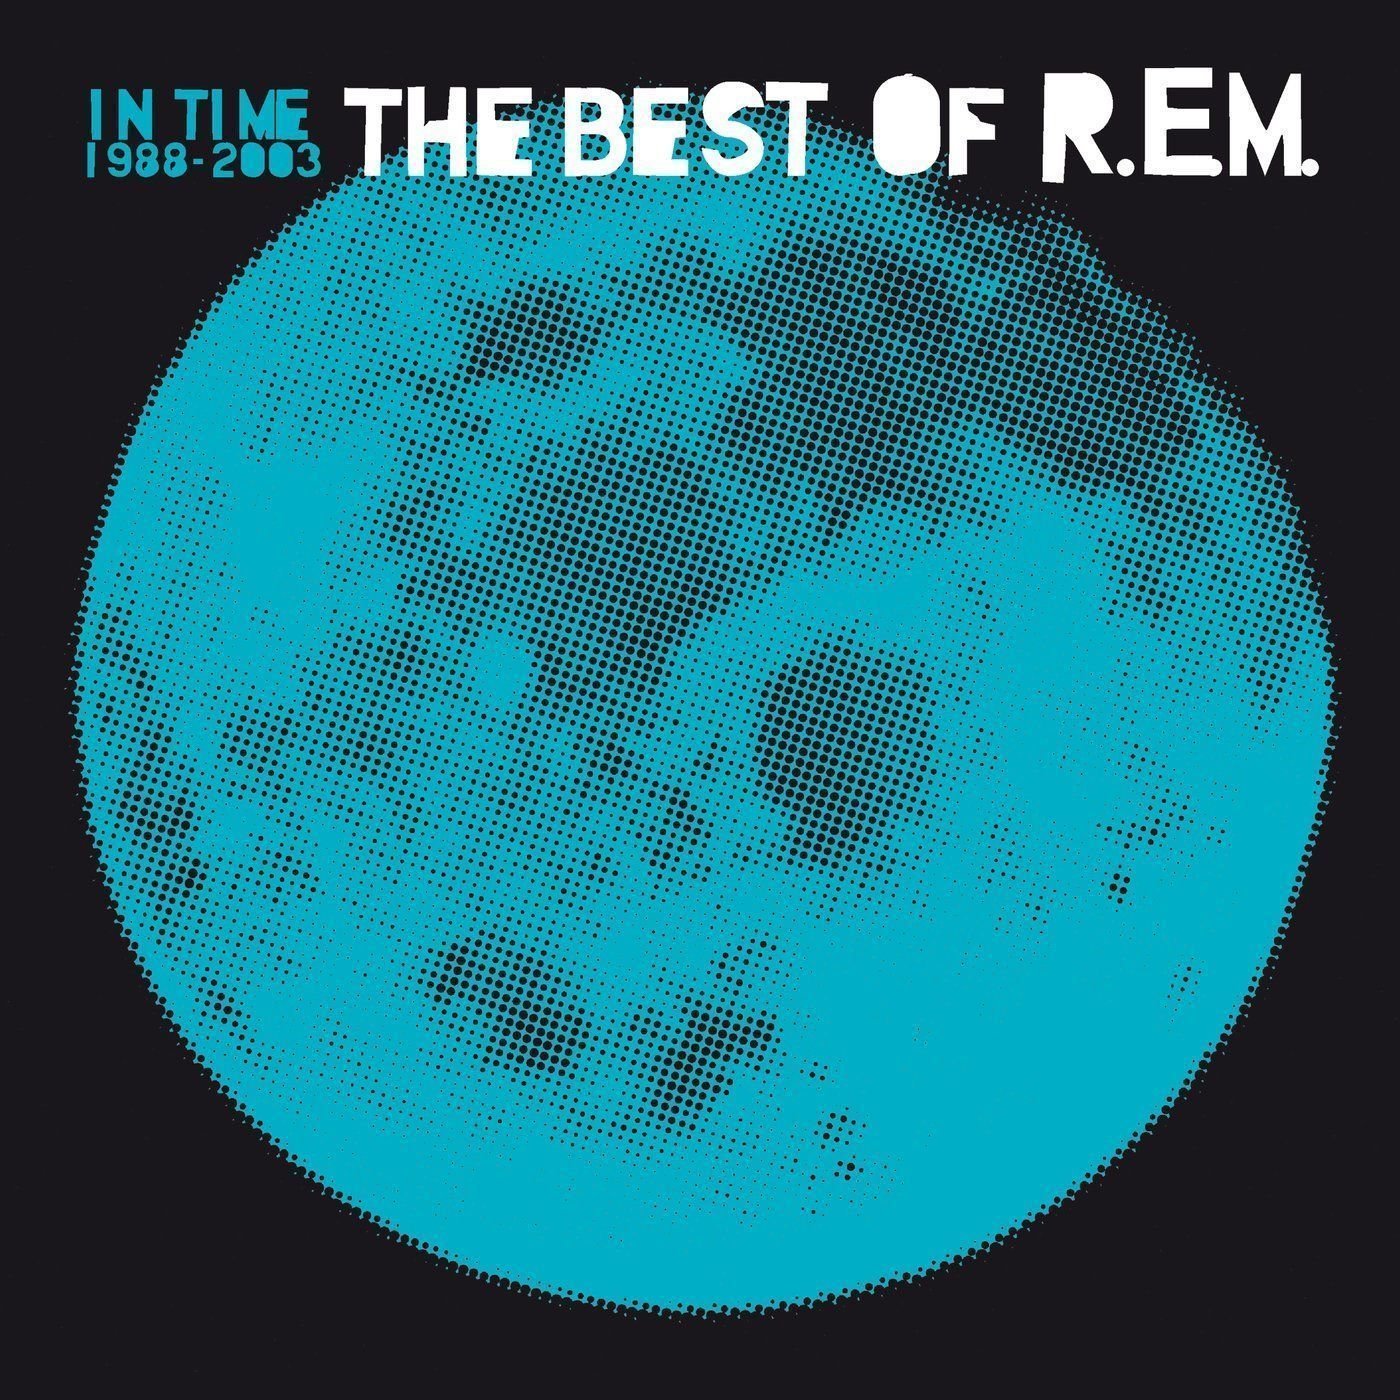 R.E.M. - In Time: The Best Of R.E.M. 1988-2003 (2 LP) R.E.M.